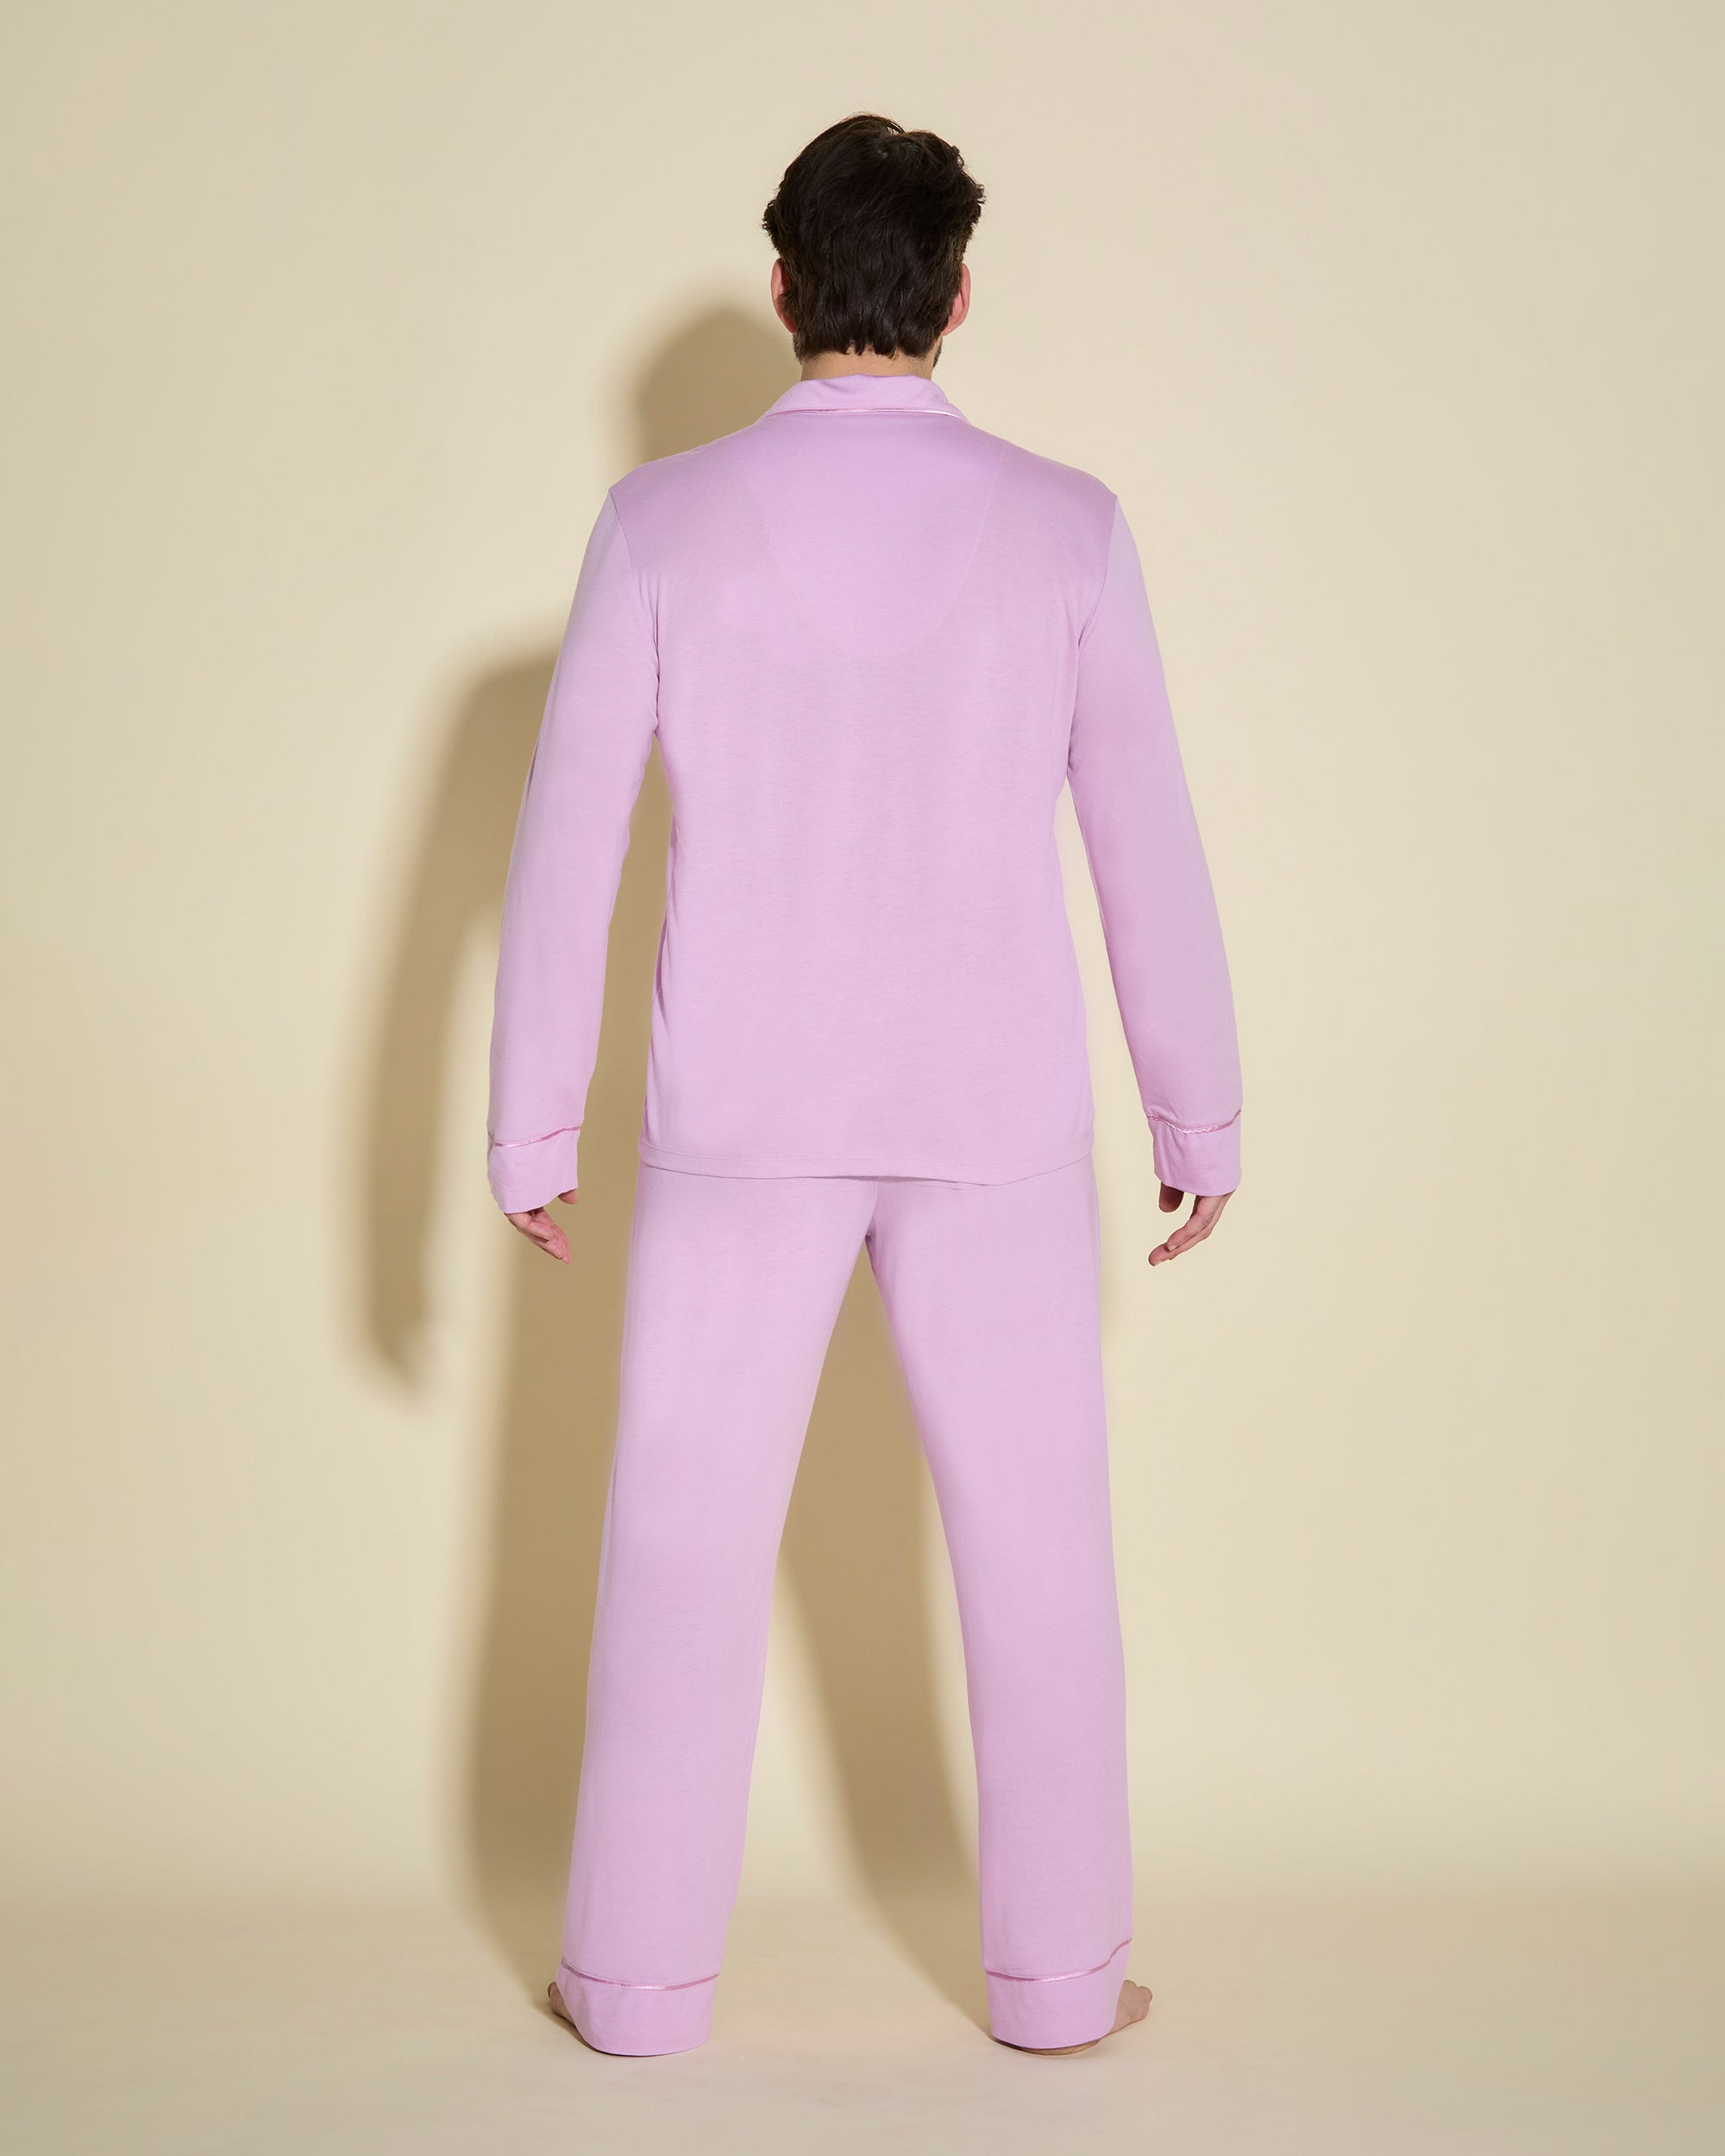 Men's Classic Long Sleeve Top & Pant Pajama Set